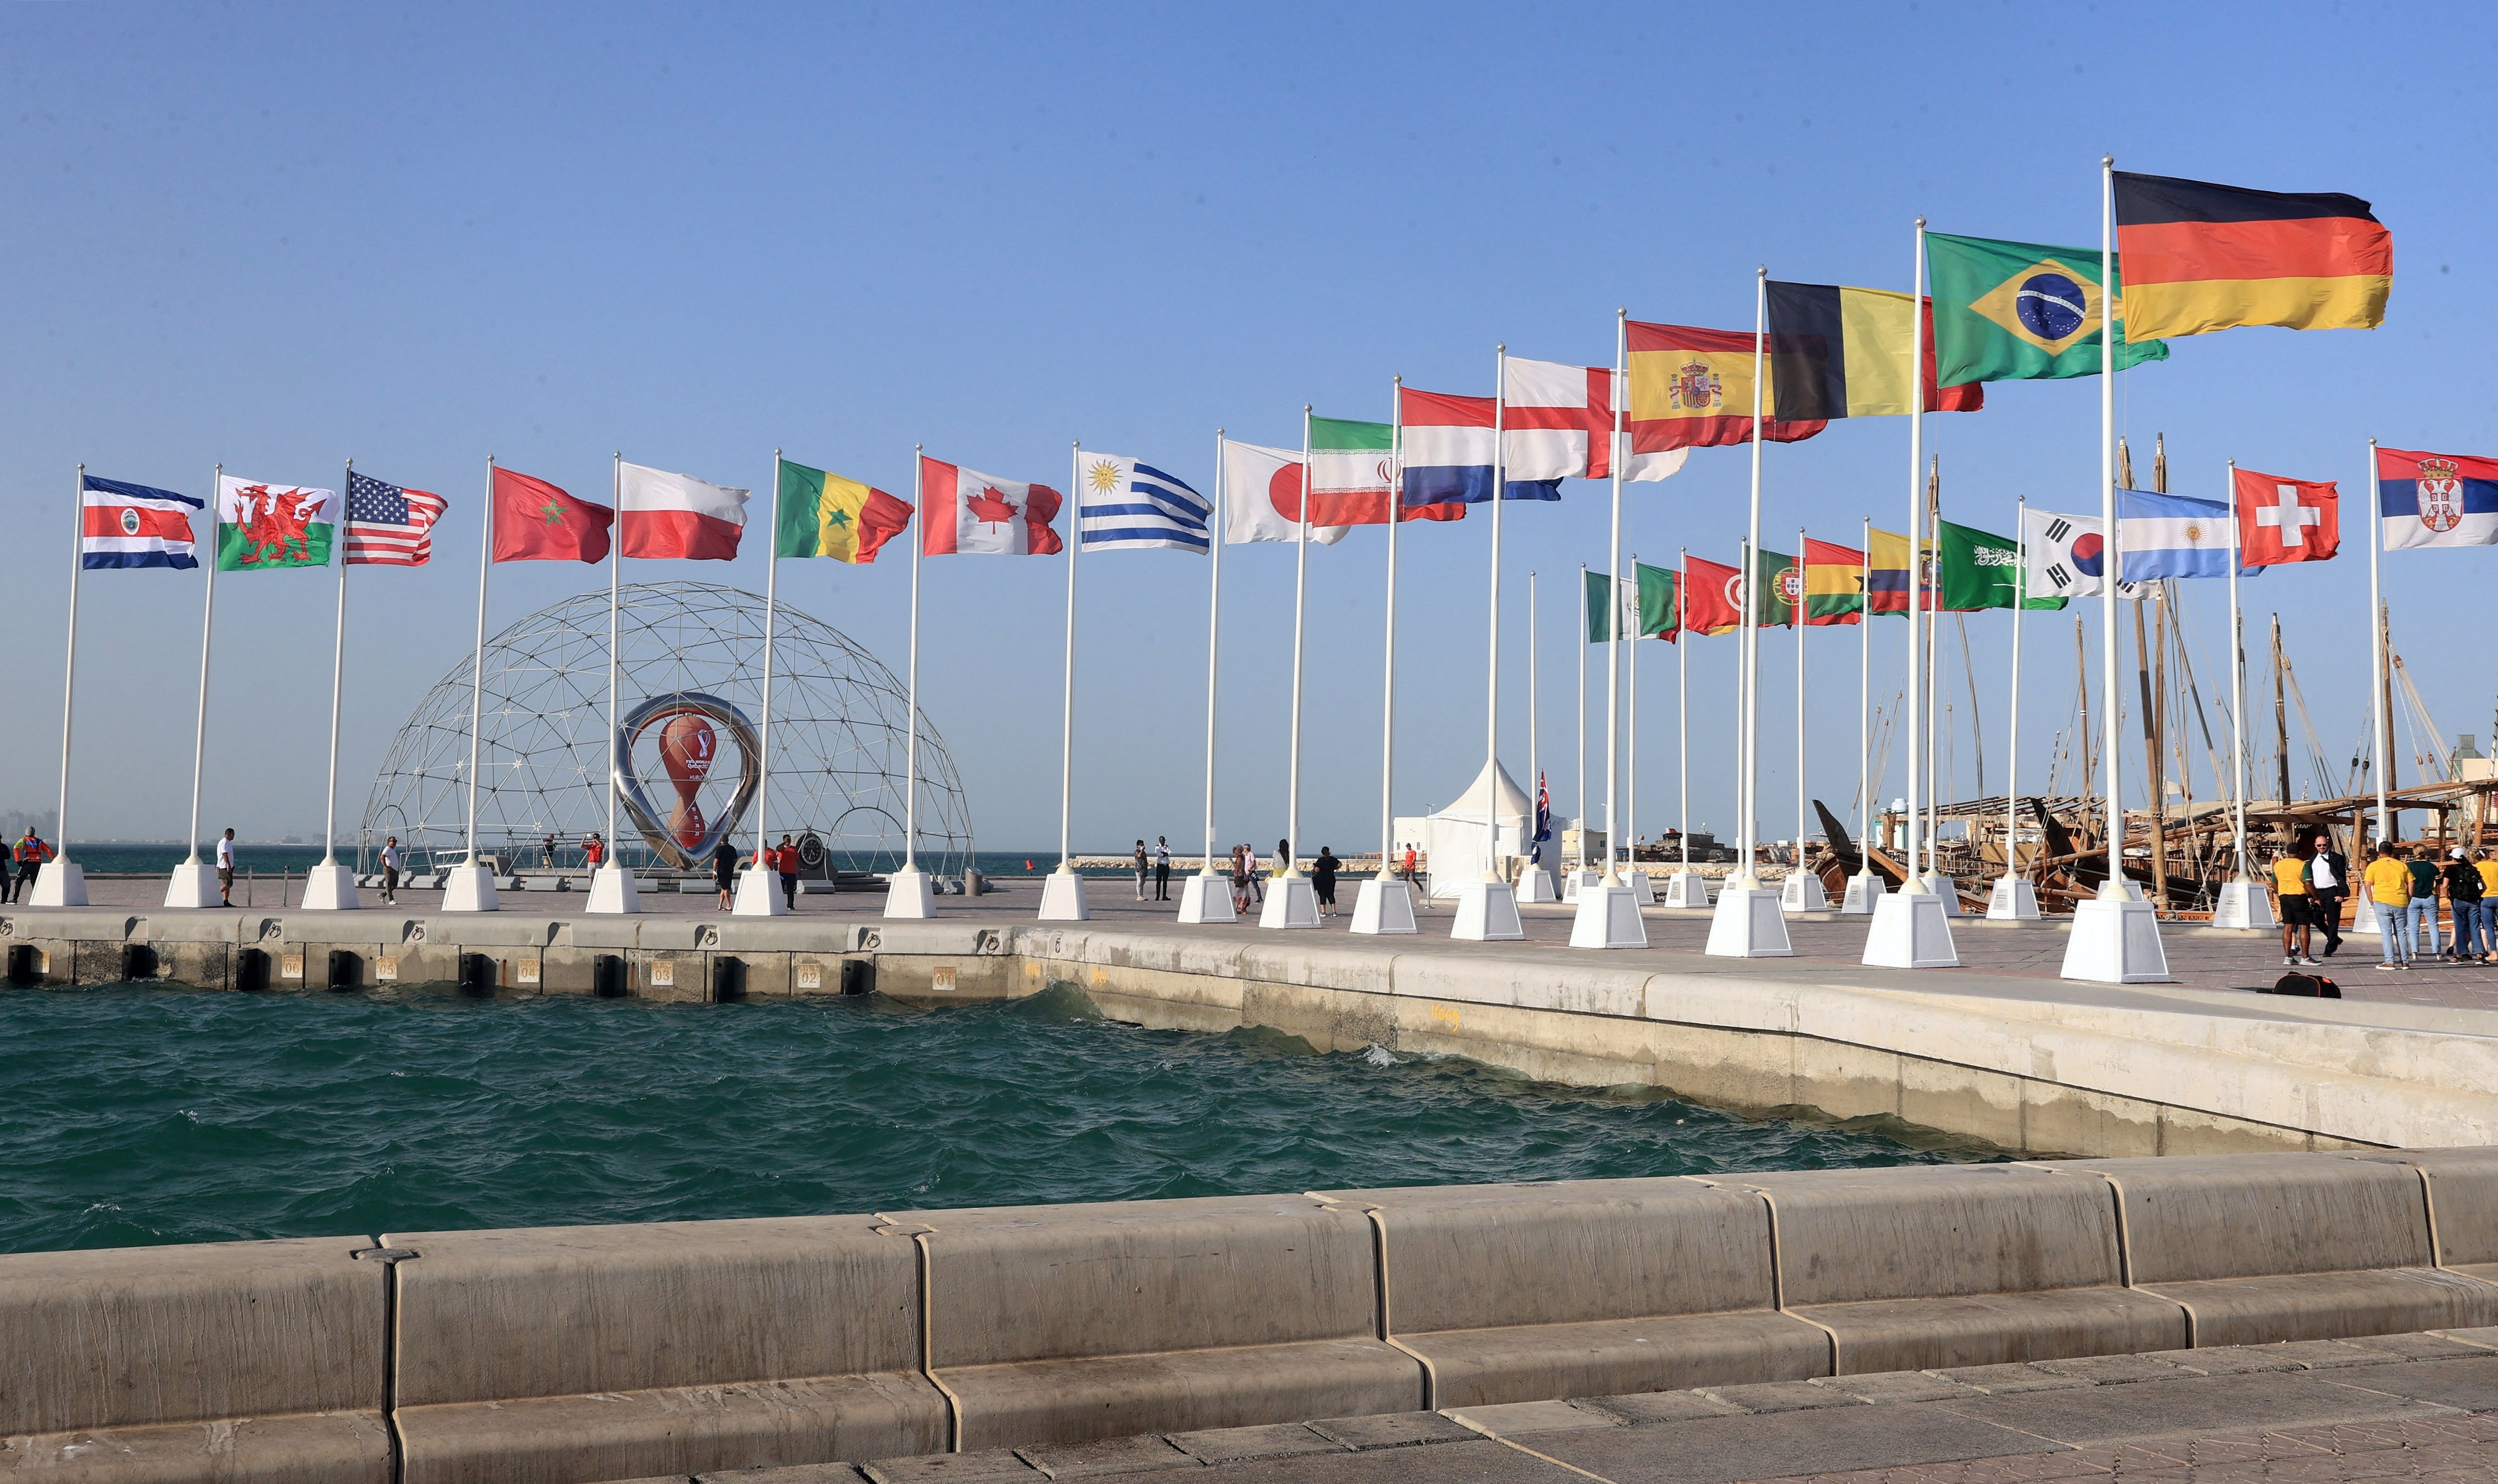 Quedan solamente 4 días para el inicio del Mundial de Qatar 2022 (Foto: REUTERS)